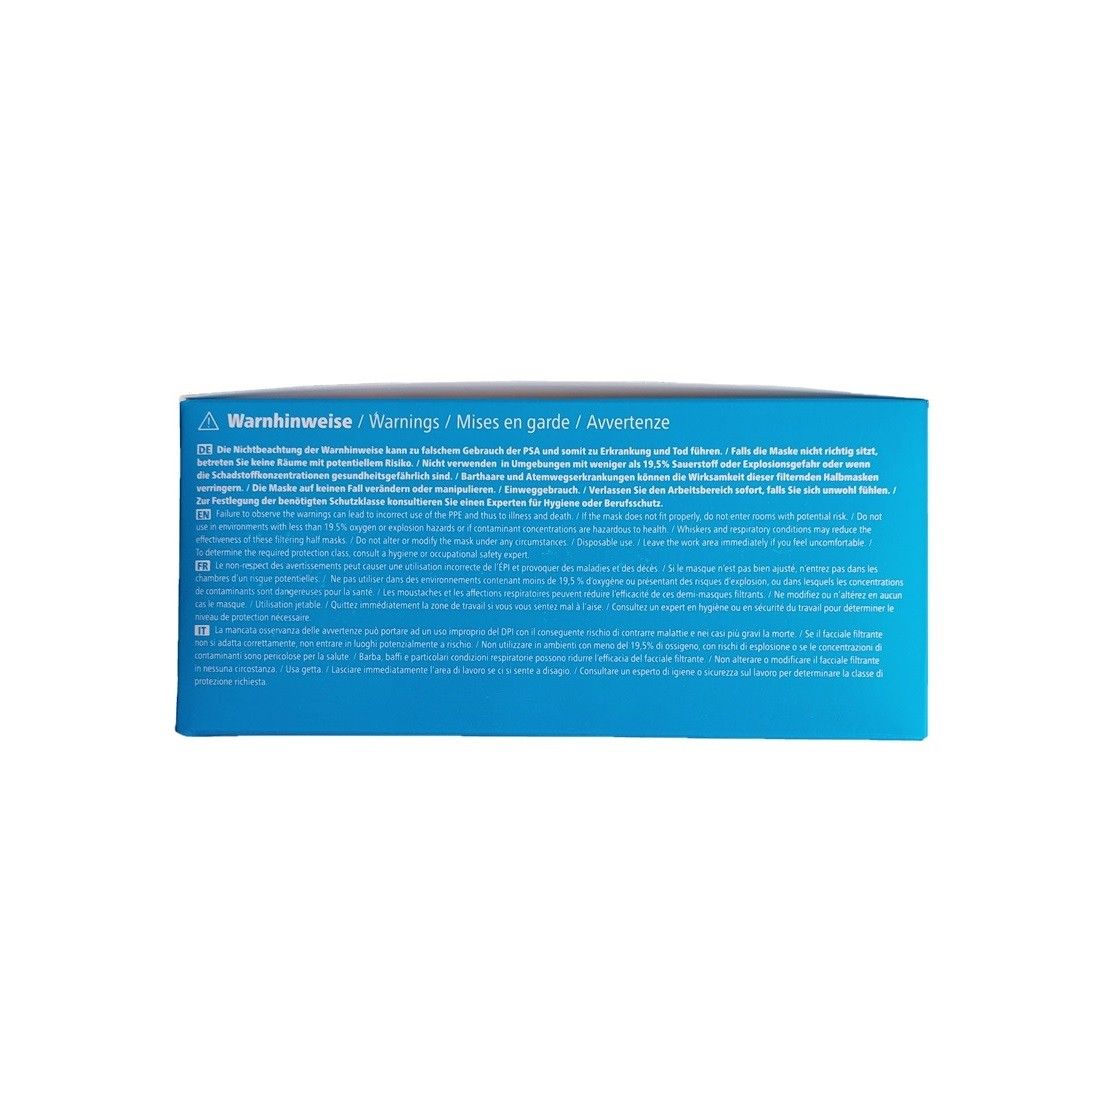 FFP2 Mundschutz-/Atemschutzmaske SIEGMUND CE-zertifiziert